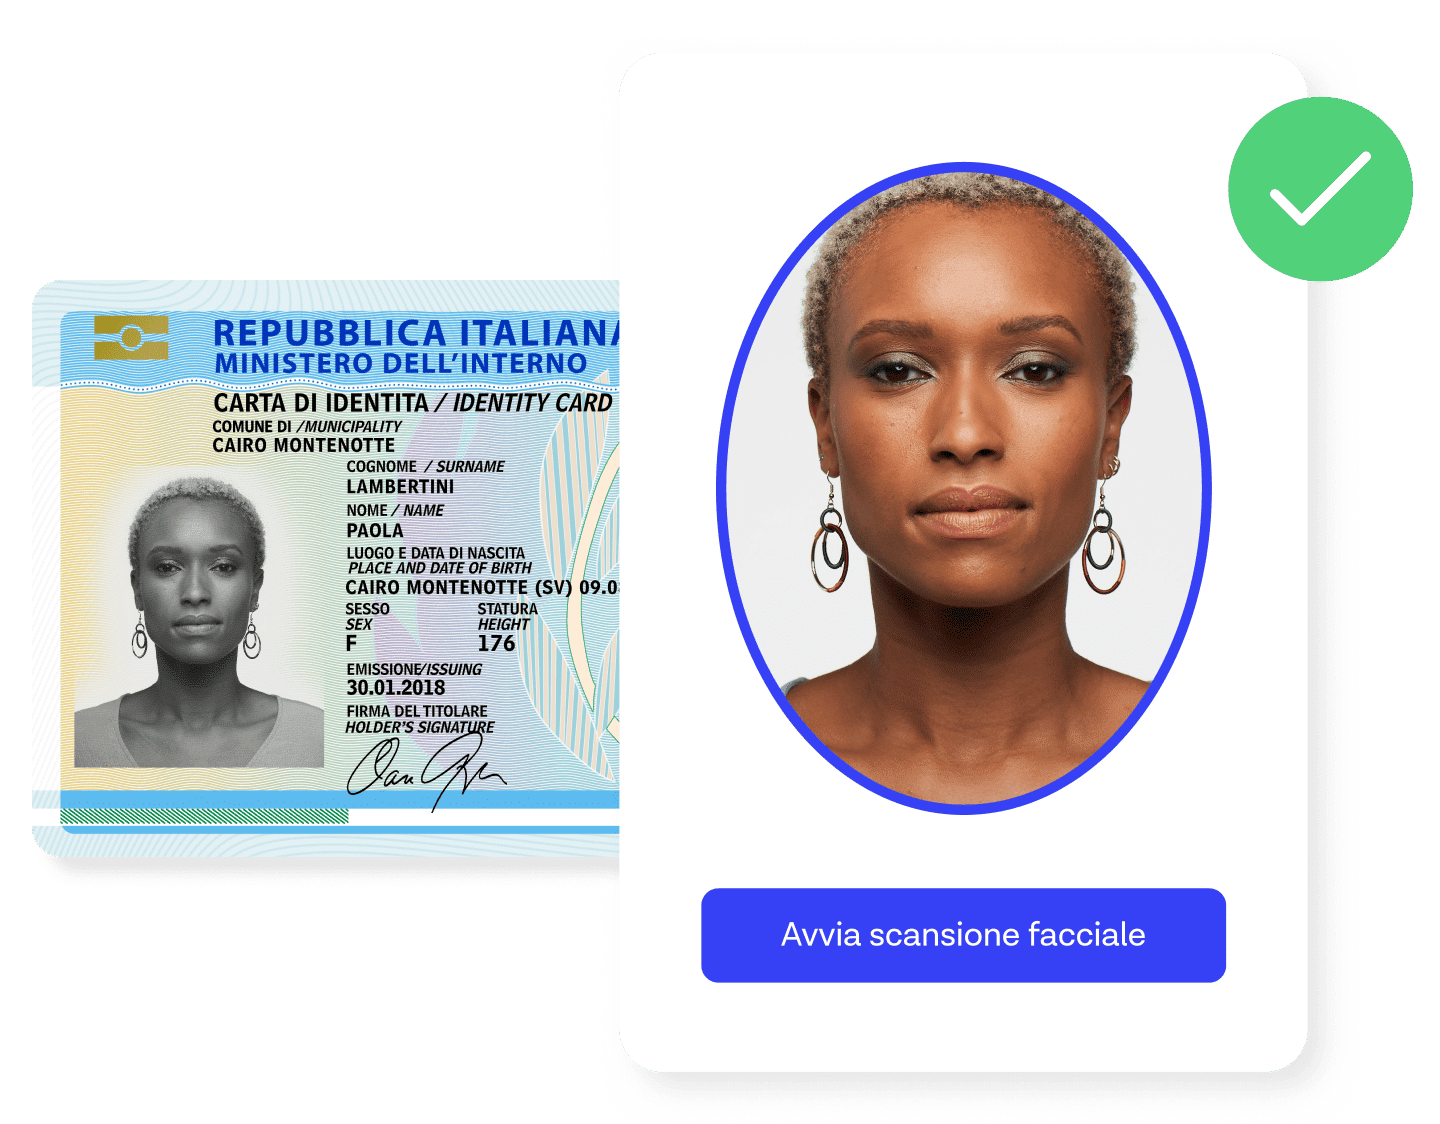 Una richiedente che supera la verifica di identità utilizzando un documento e il controllo biometrico.